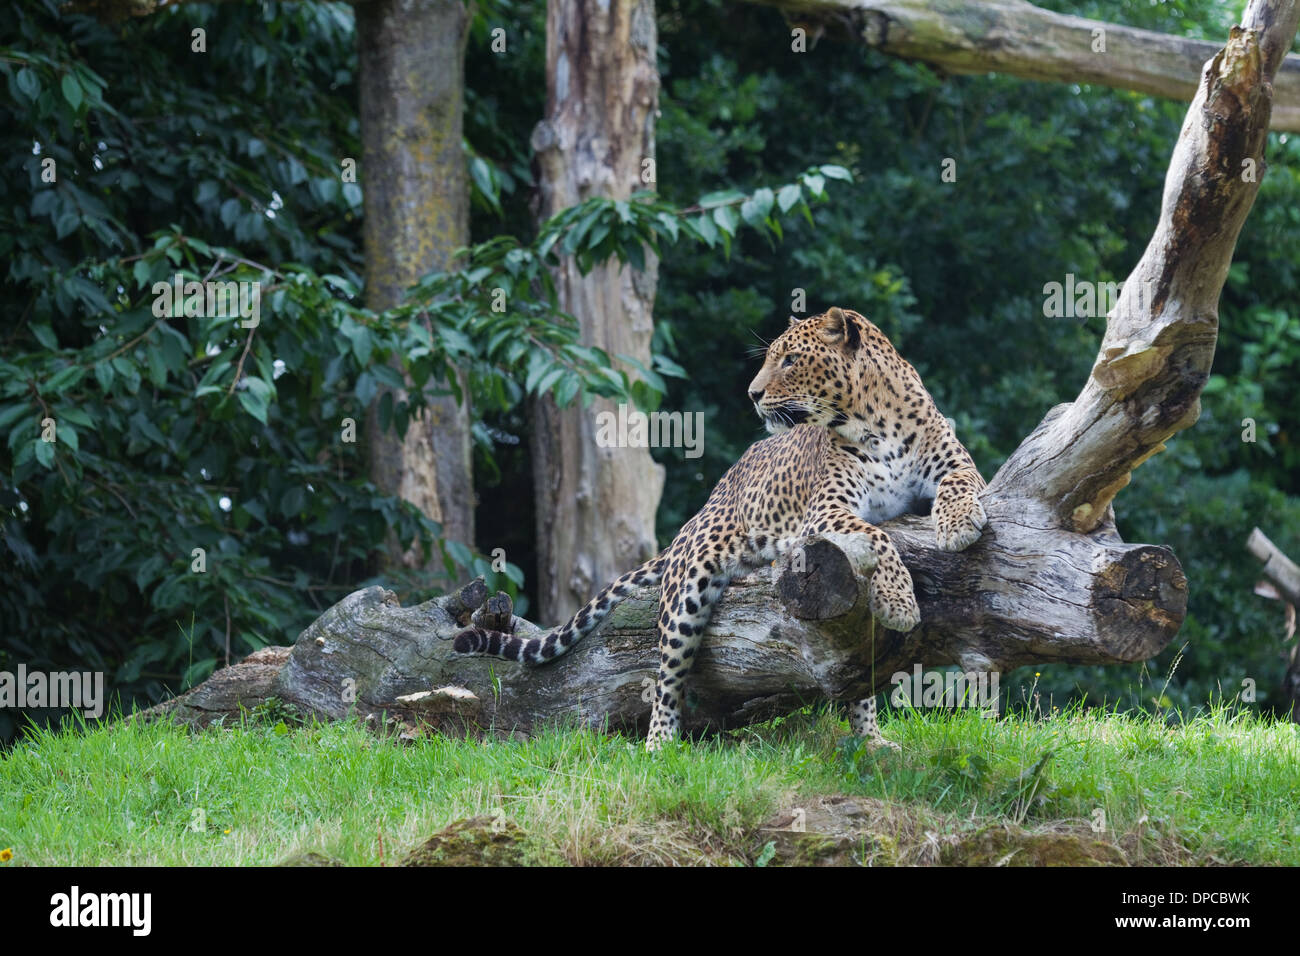 Sri Lankan Leopard (Panthera pardus kotiya). Endangered sub-species. Banham Zoo. Norfolk. England. Stock Photo